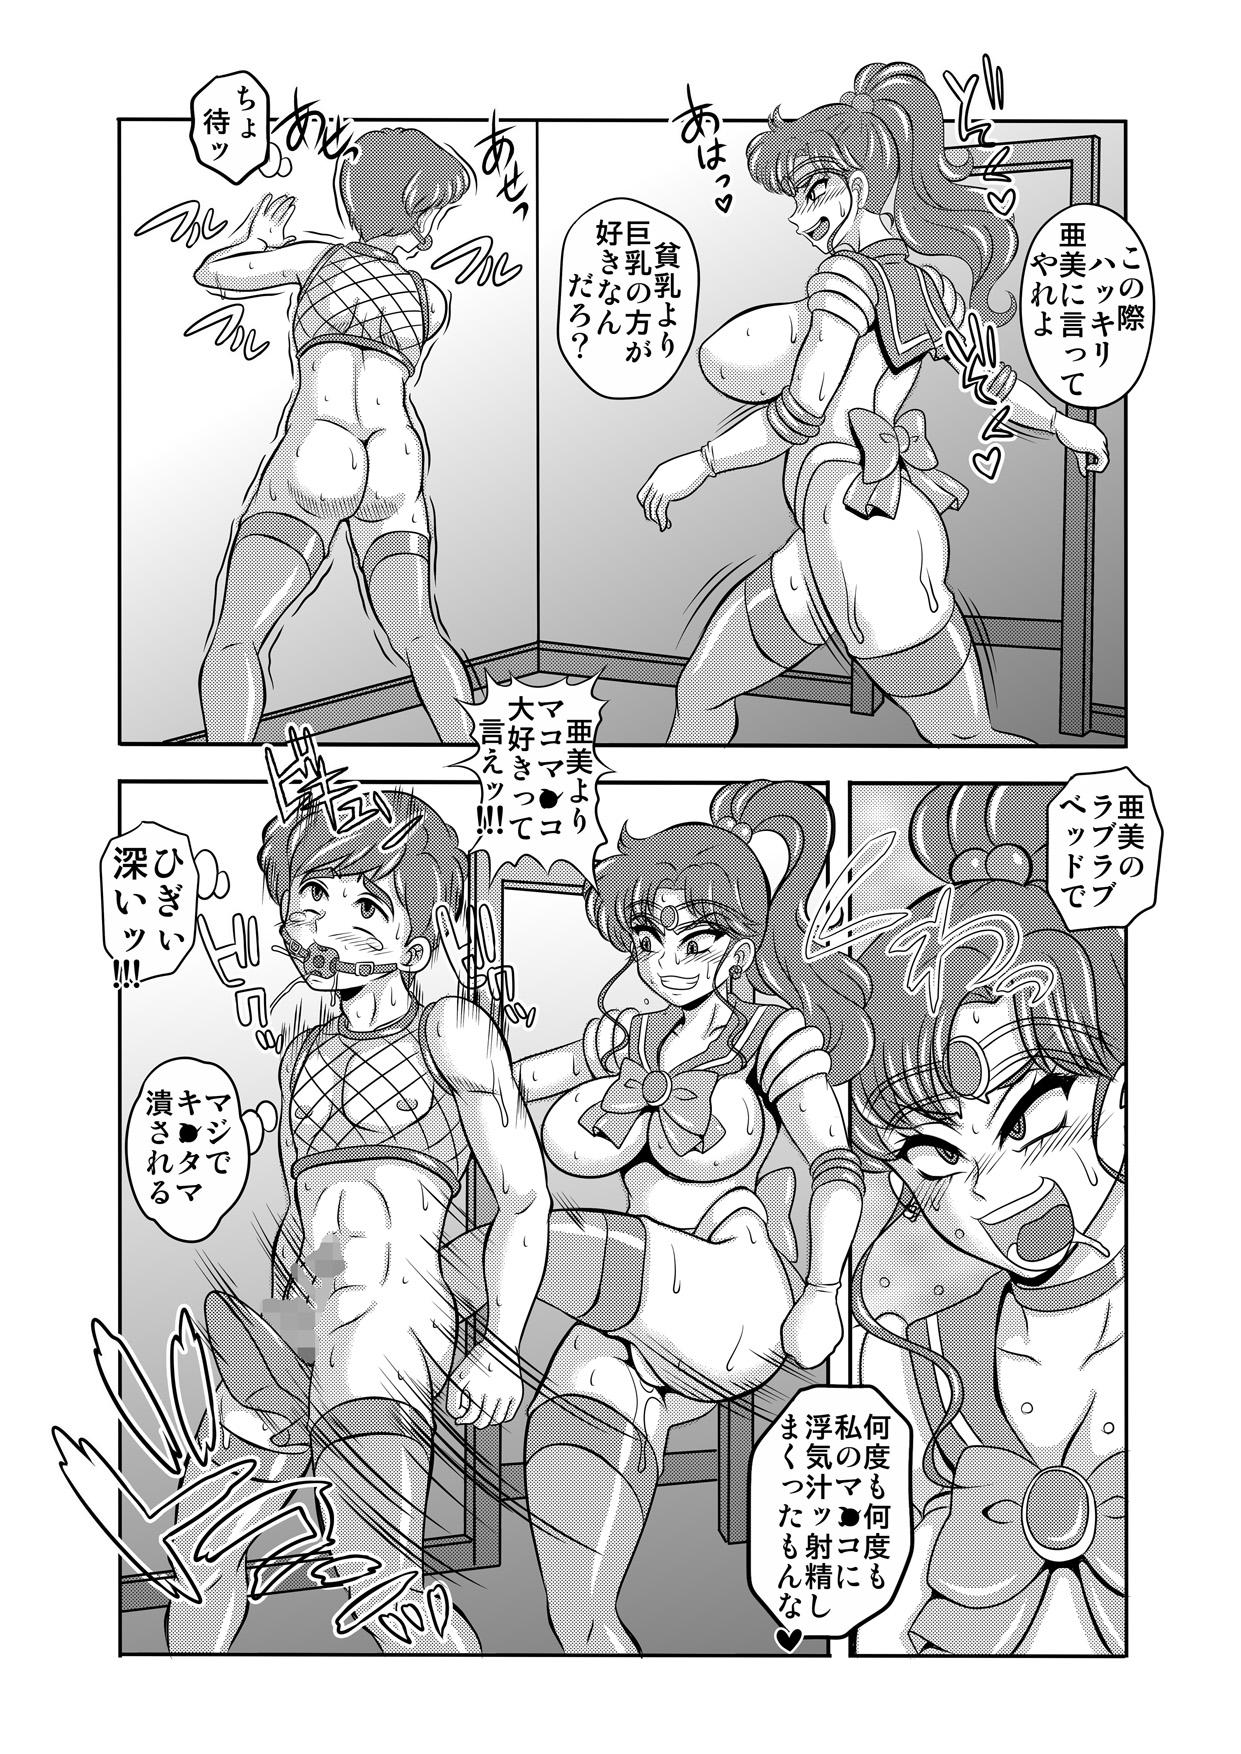 Pounding Netori Netorare Toshiue Cosplayer-tachi no Yuuwaku 06 - Sailor moon Indian - Page 12